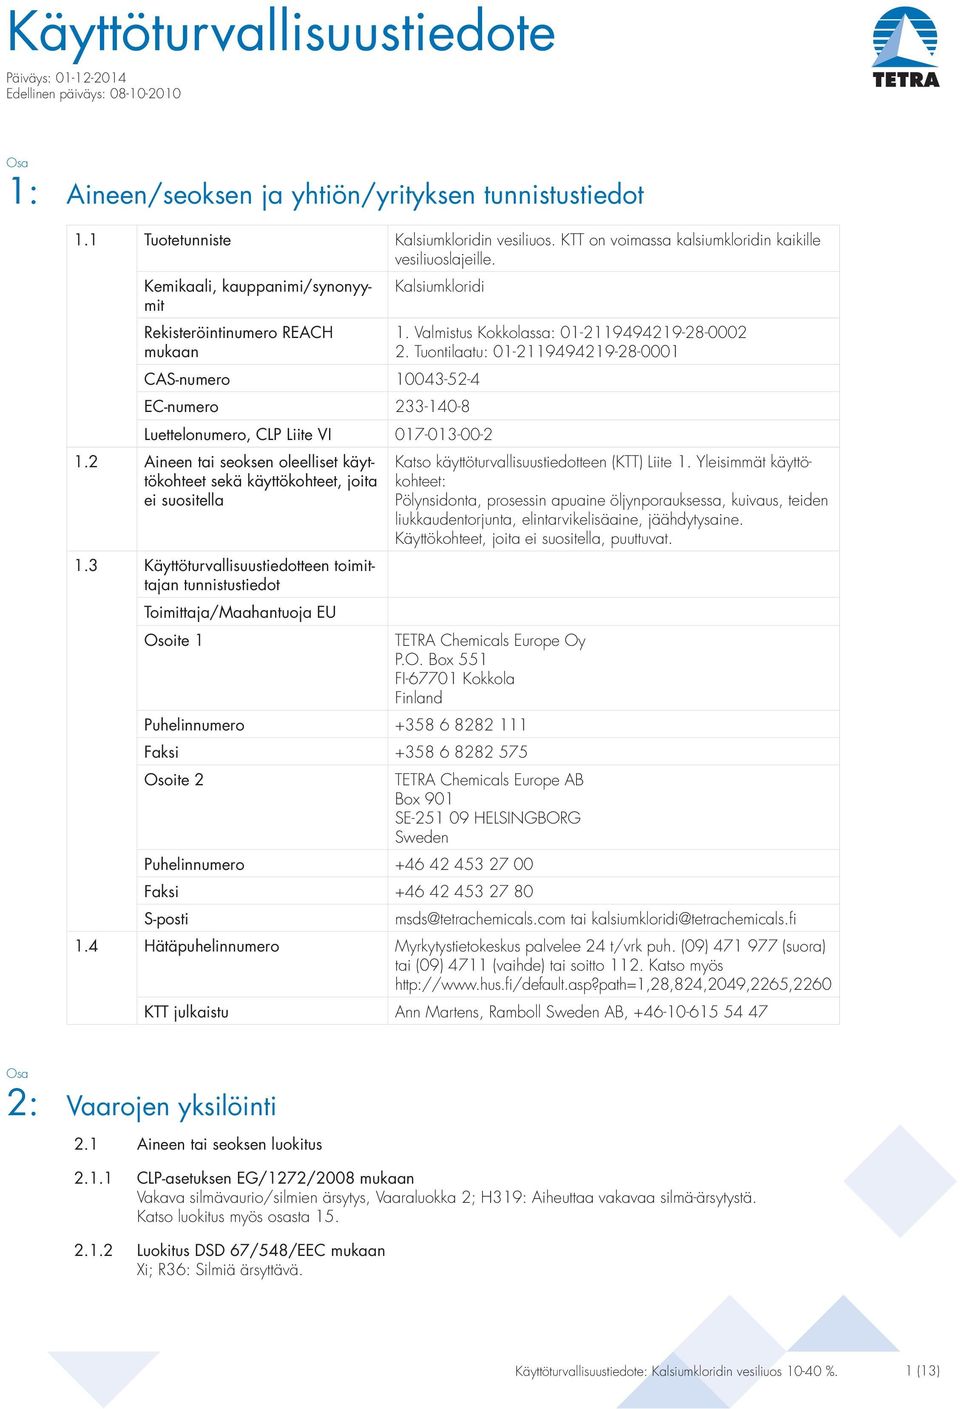 Kemikaali, kauppanimi/synonyymit Rekisteröintinumero REACH mukaan Kalsiumkloridi CAS-numero 10043-52-4 EC-numero 233-140-8 Luettelonumero, CLP Liite VI 017-013-00-2 1.